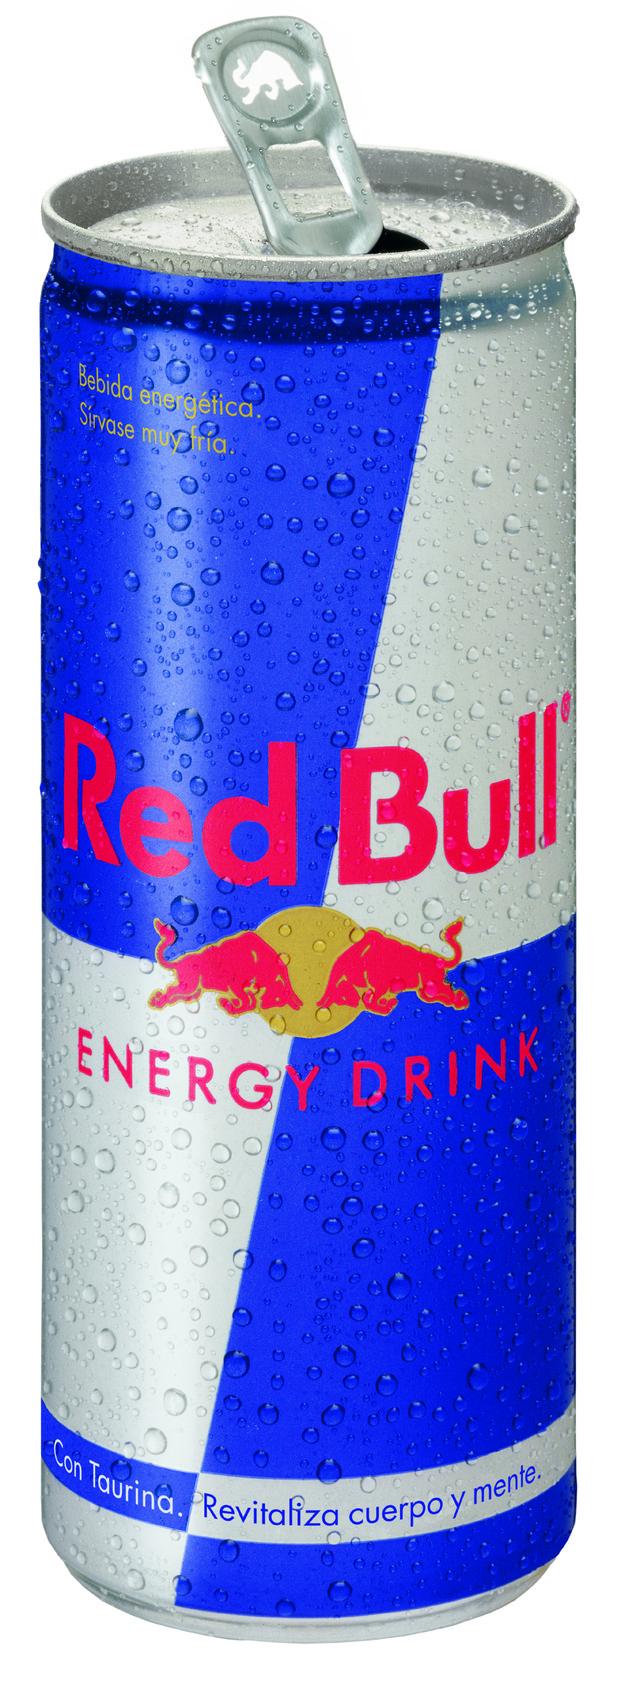 Red Bull. Bebidas energéticas